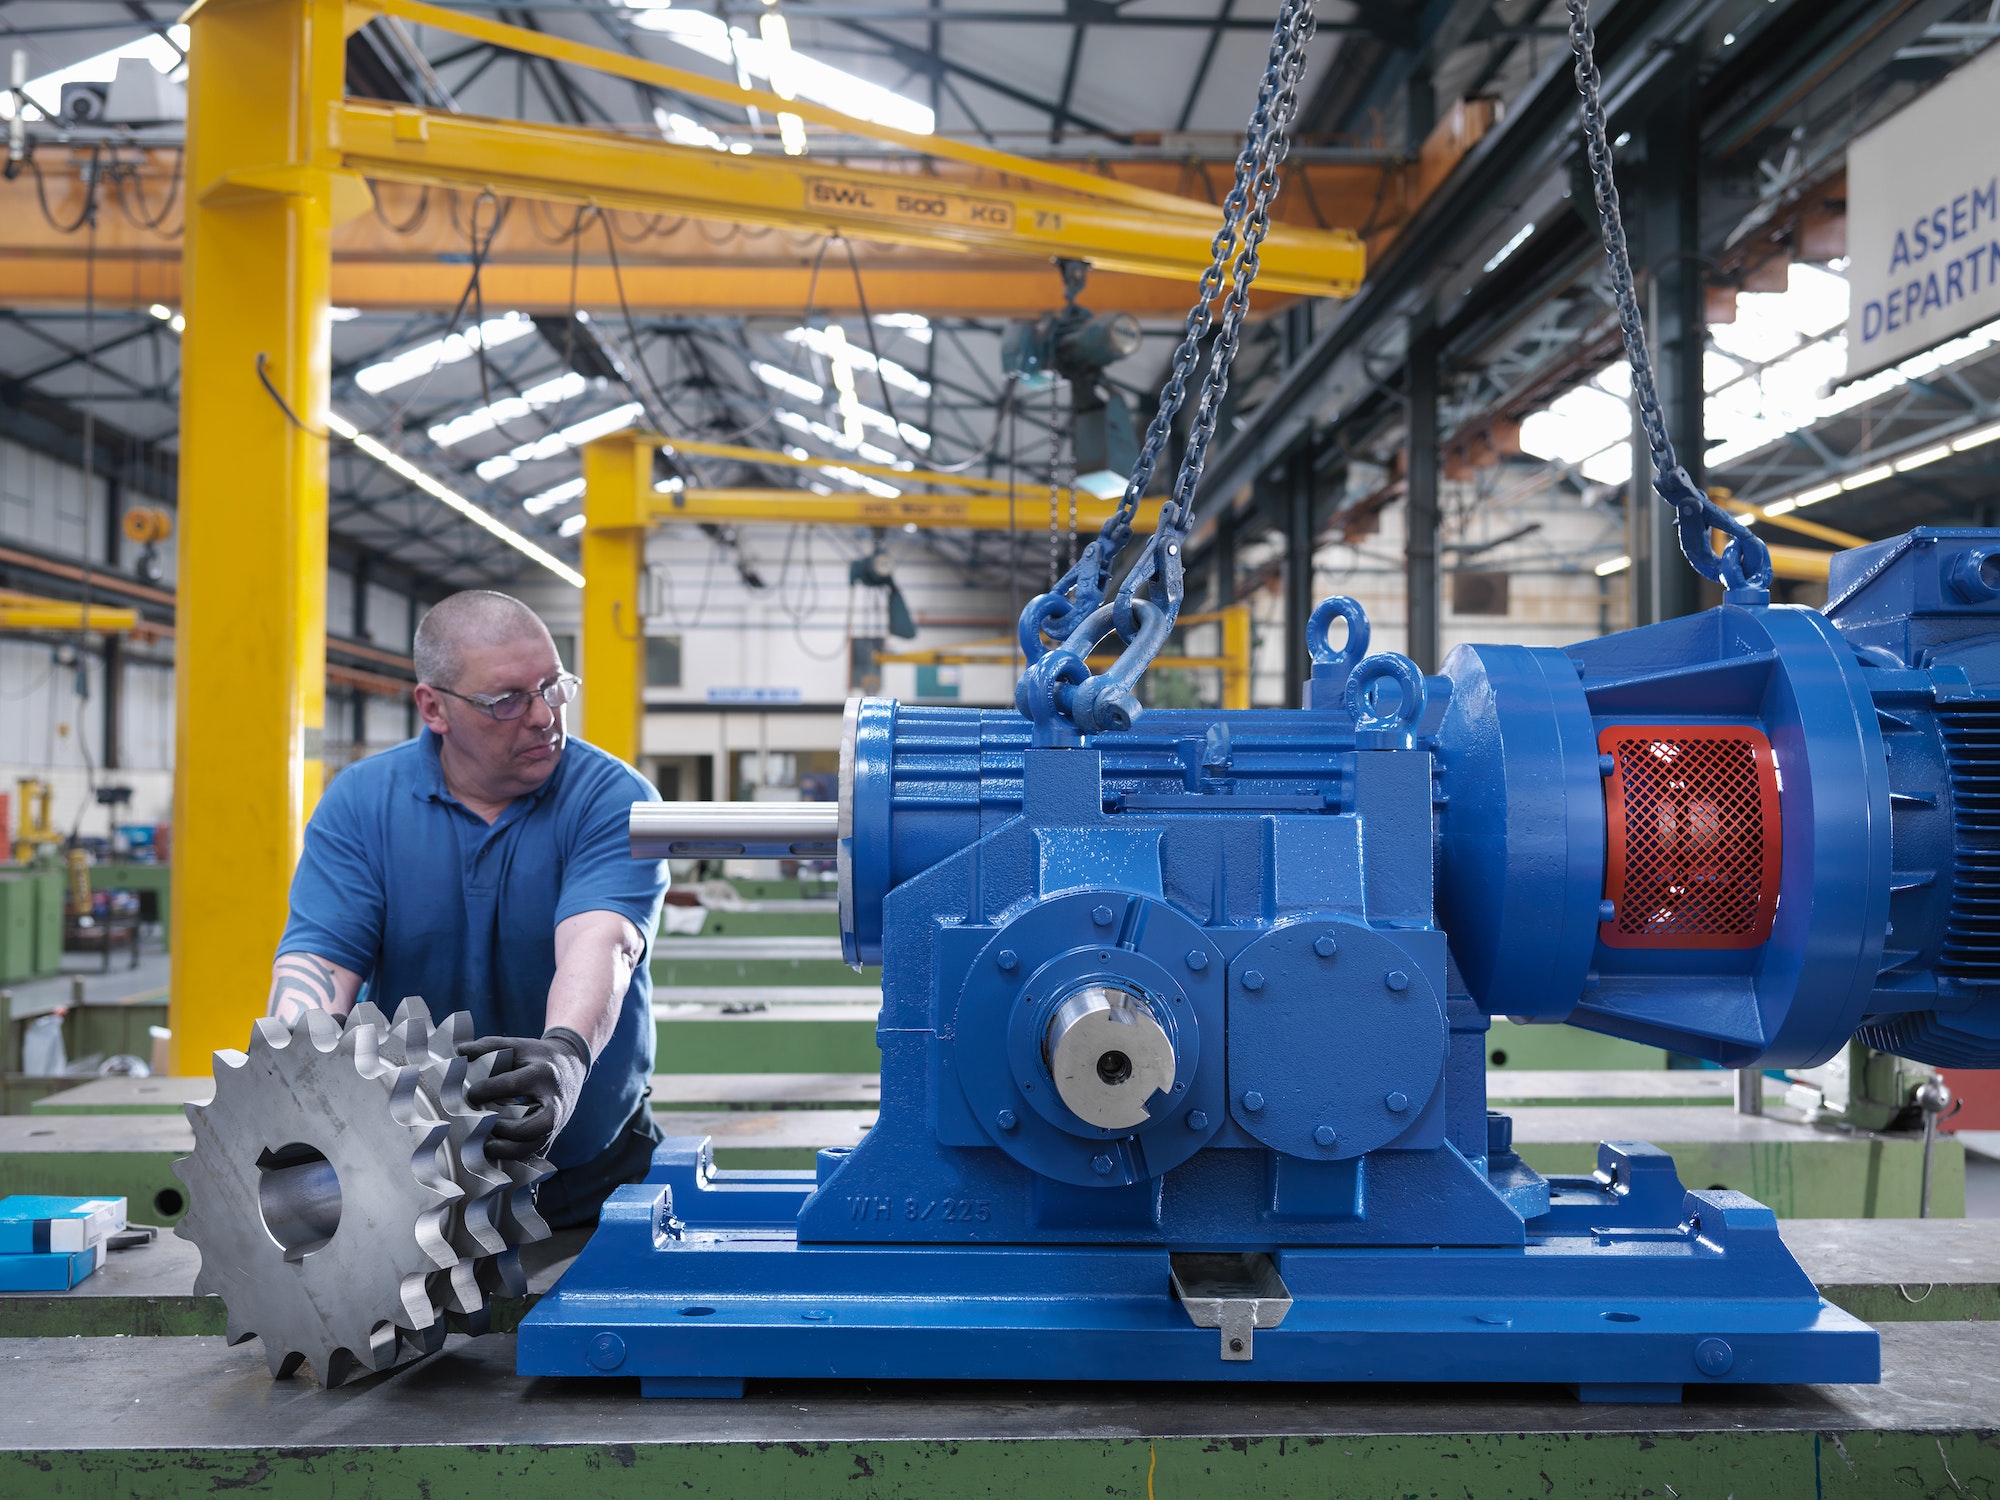 Engineer assembling industrial gearbox in engineering factory